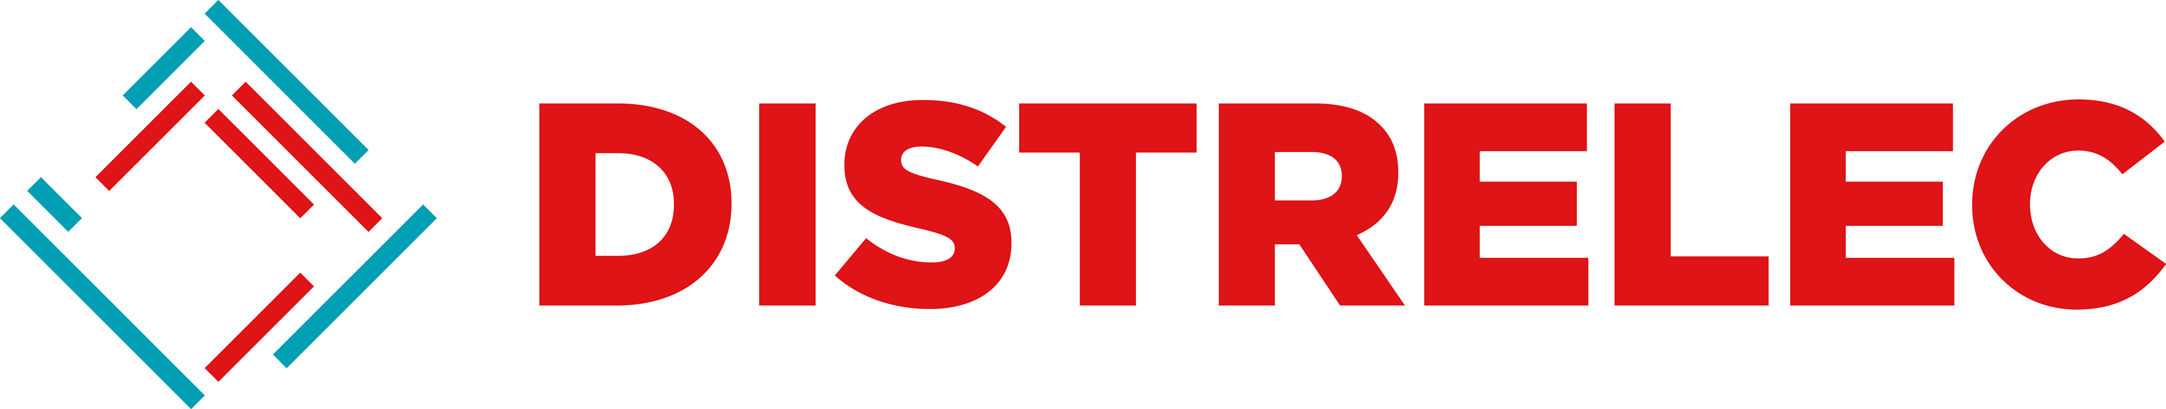 Distrelec Logo sRGB